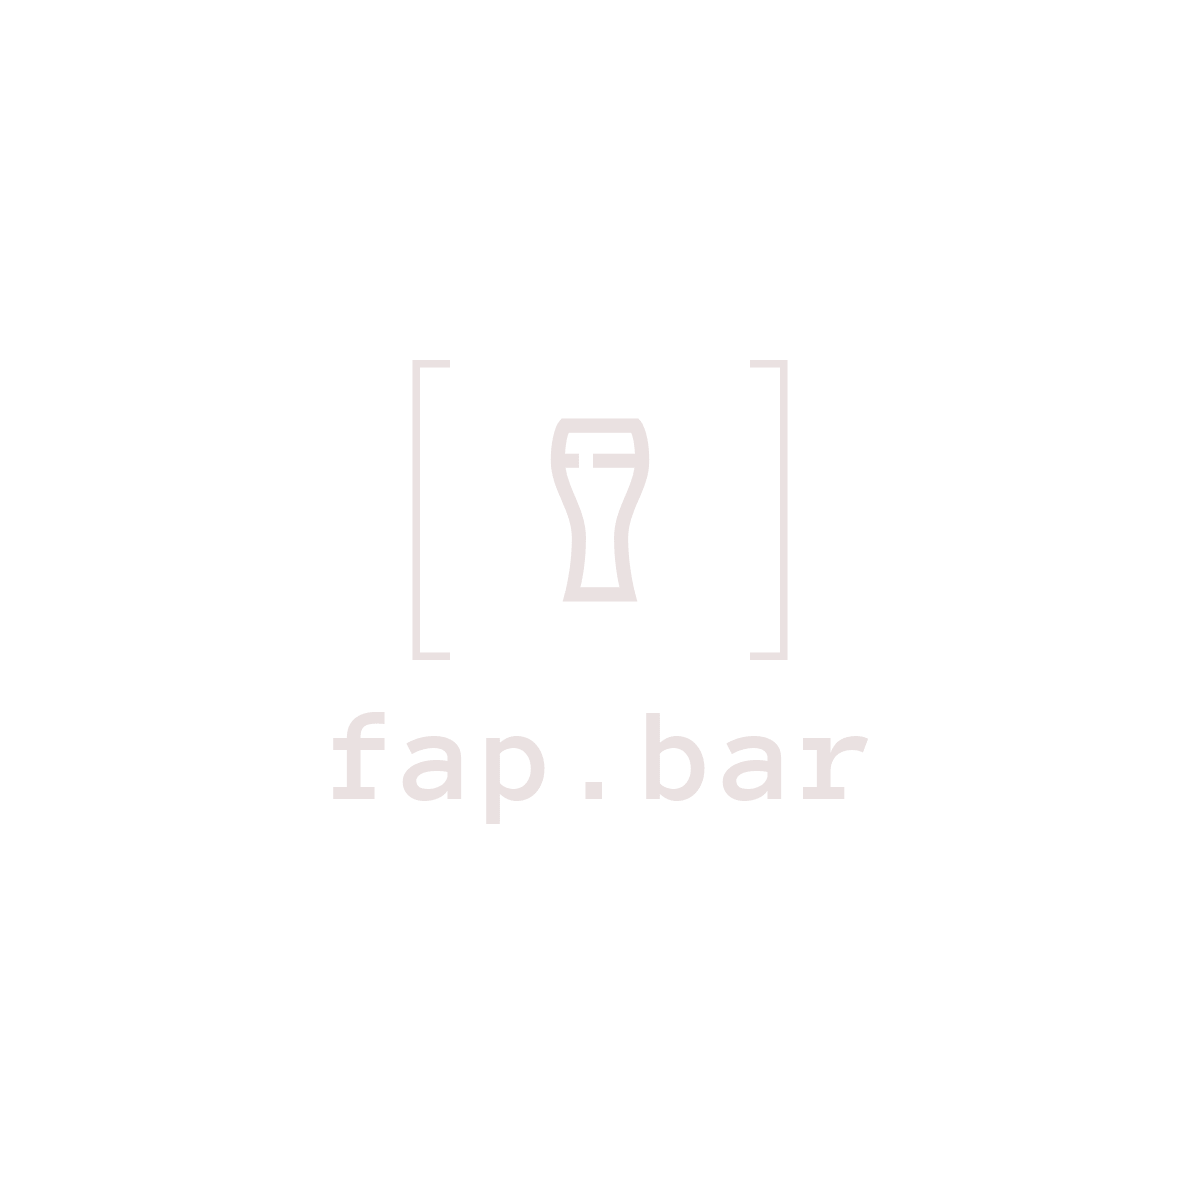 fap.bar logo in header